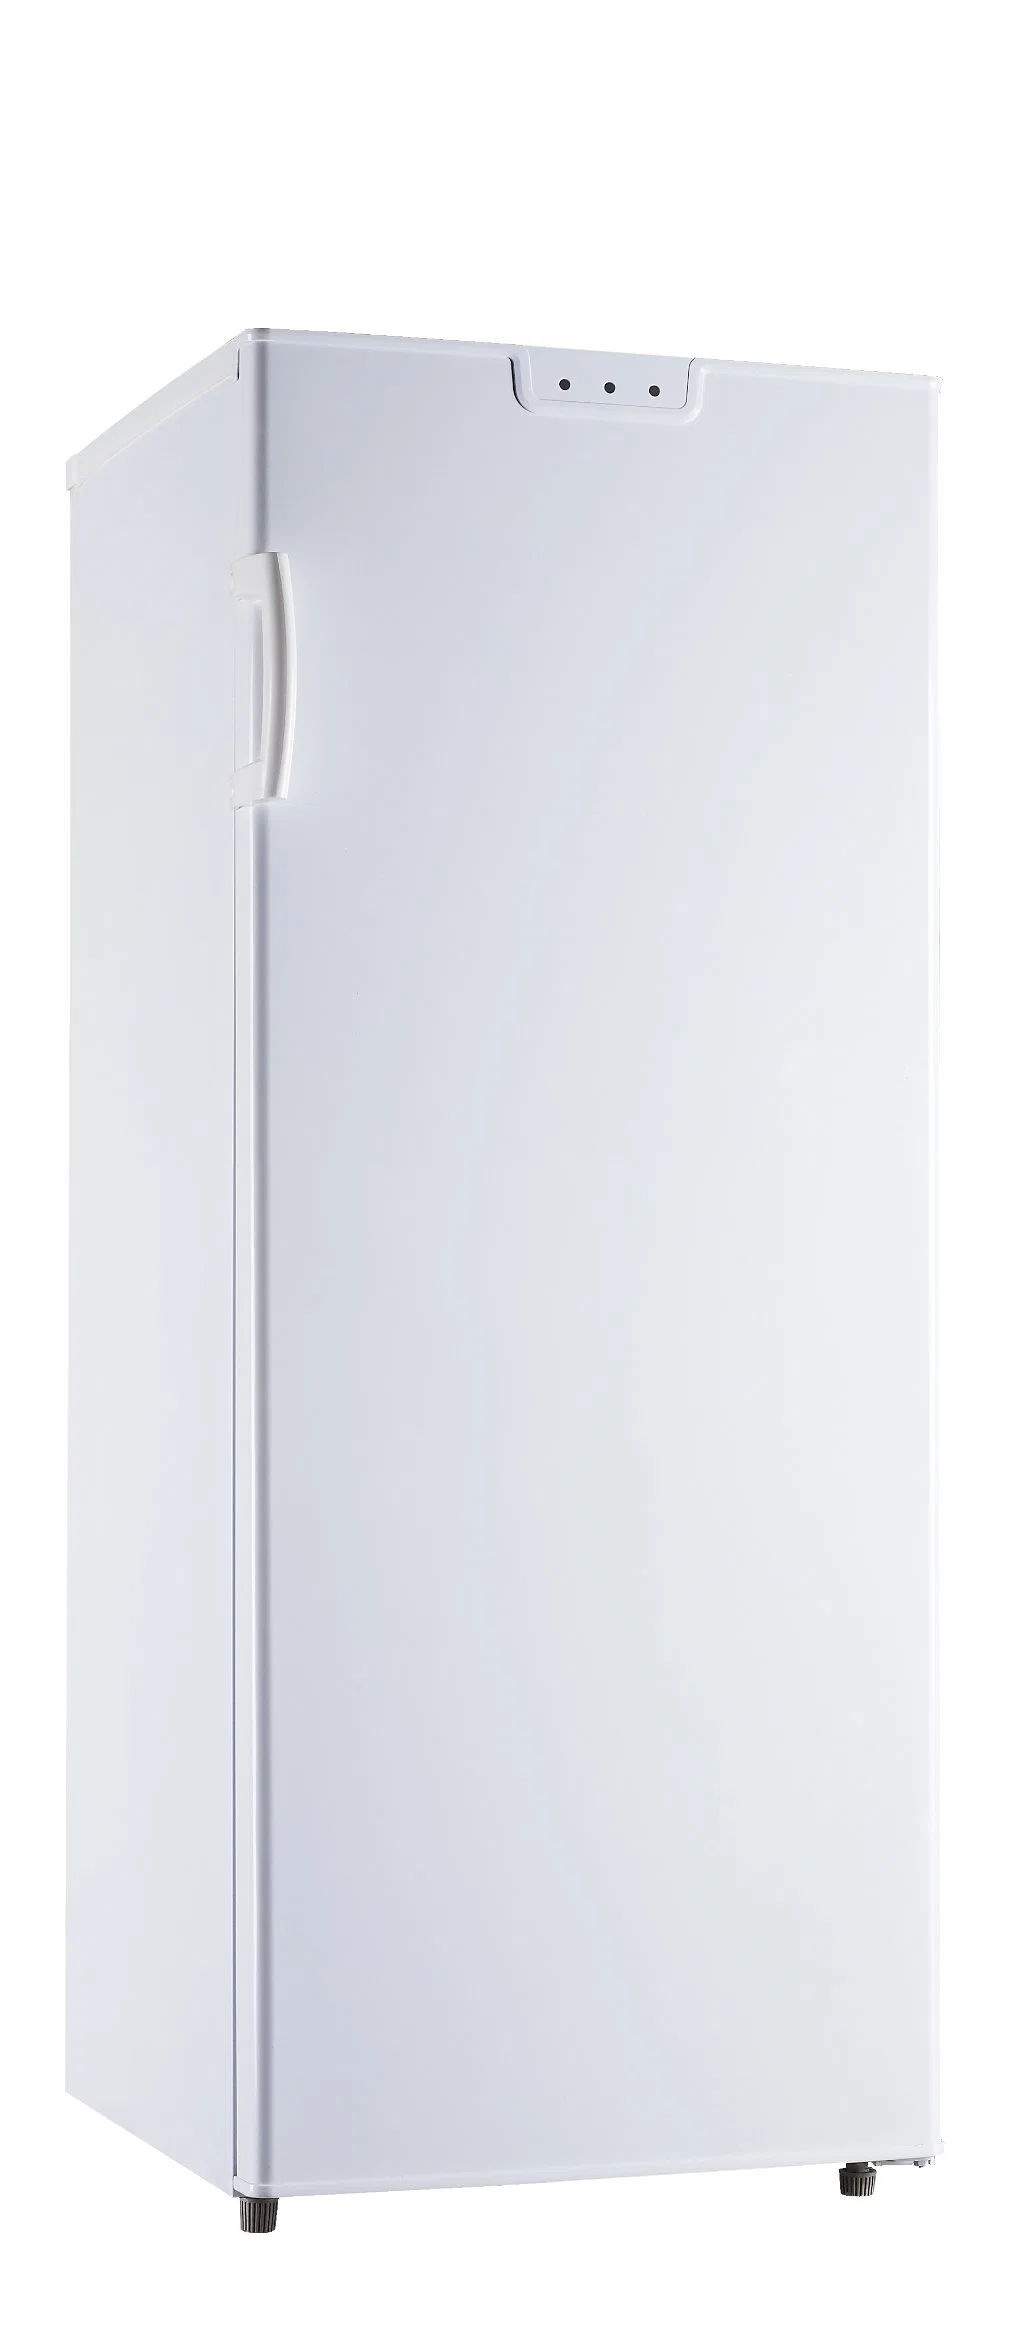 China Factory Heißer Verkauf Kühlschrank Doppeltür Kühlschrank